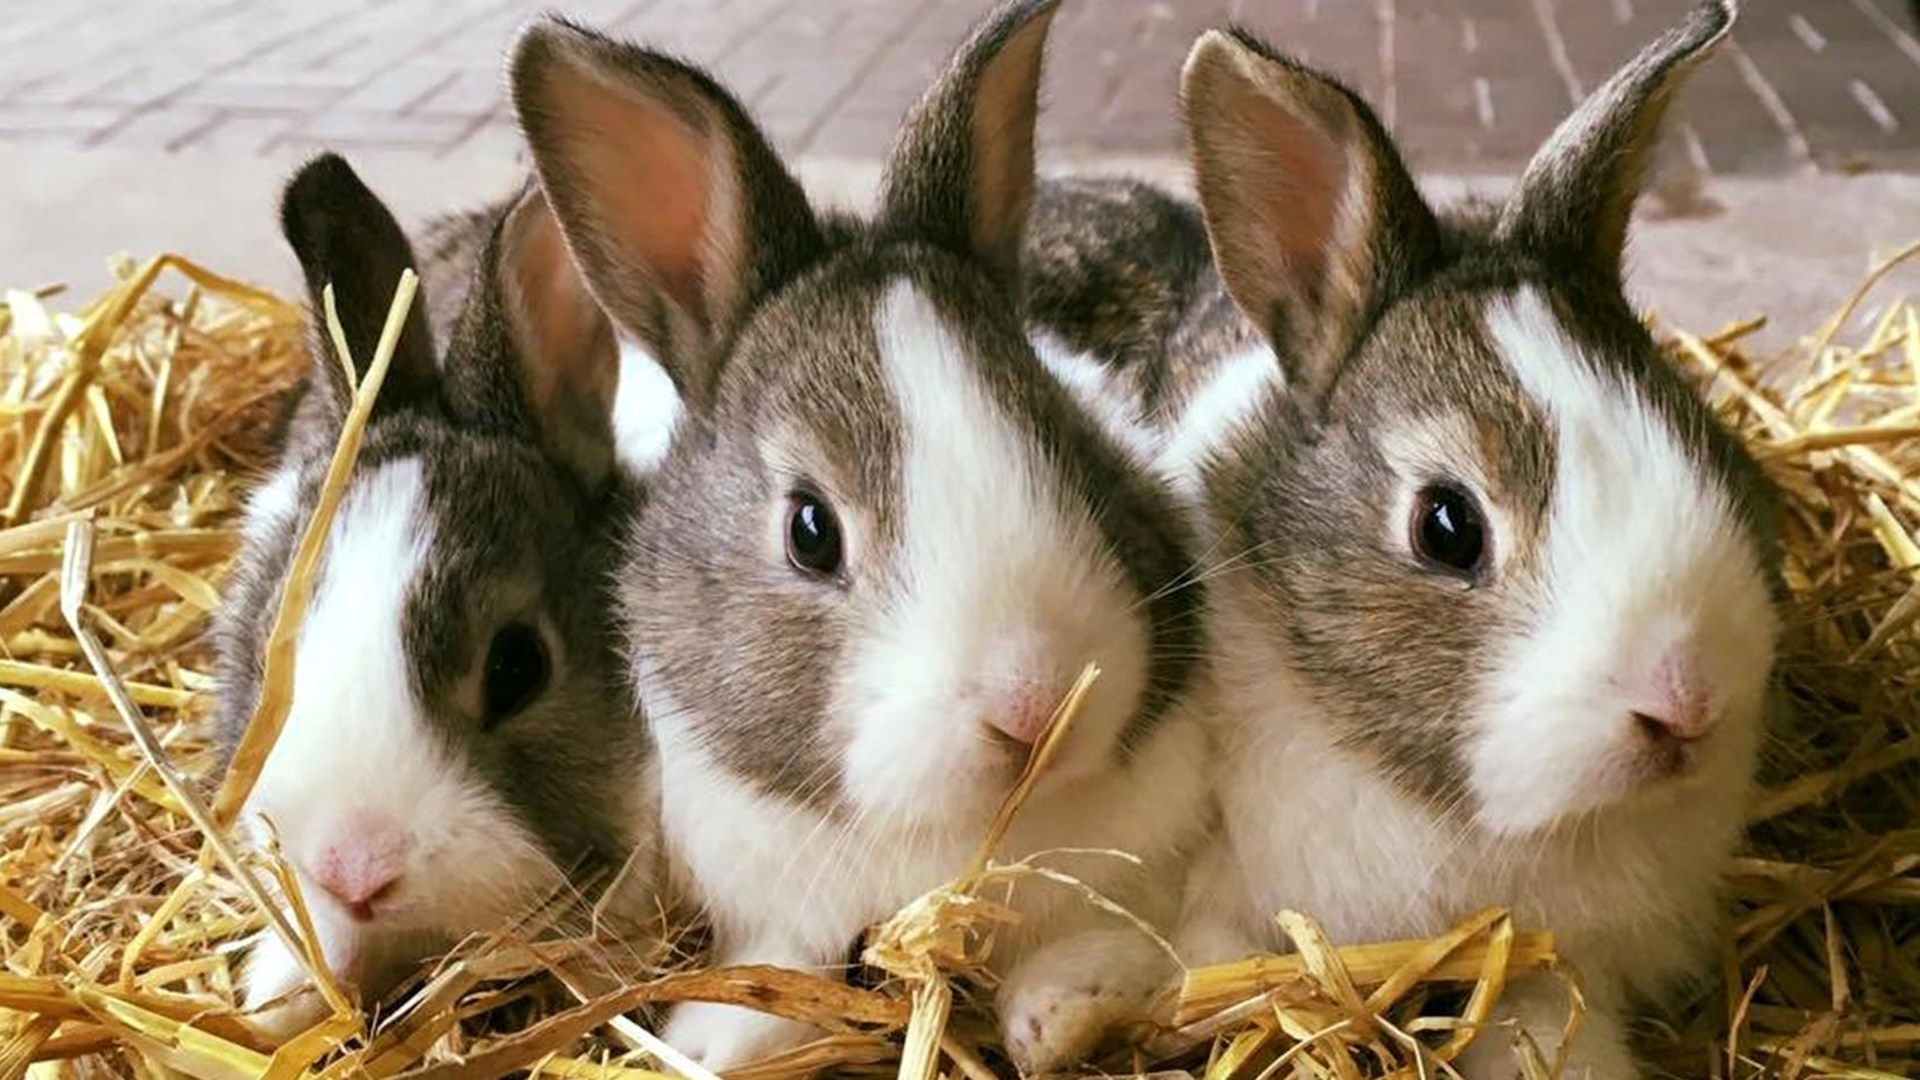 Close up of three cute rabbits